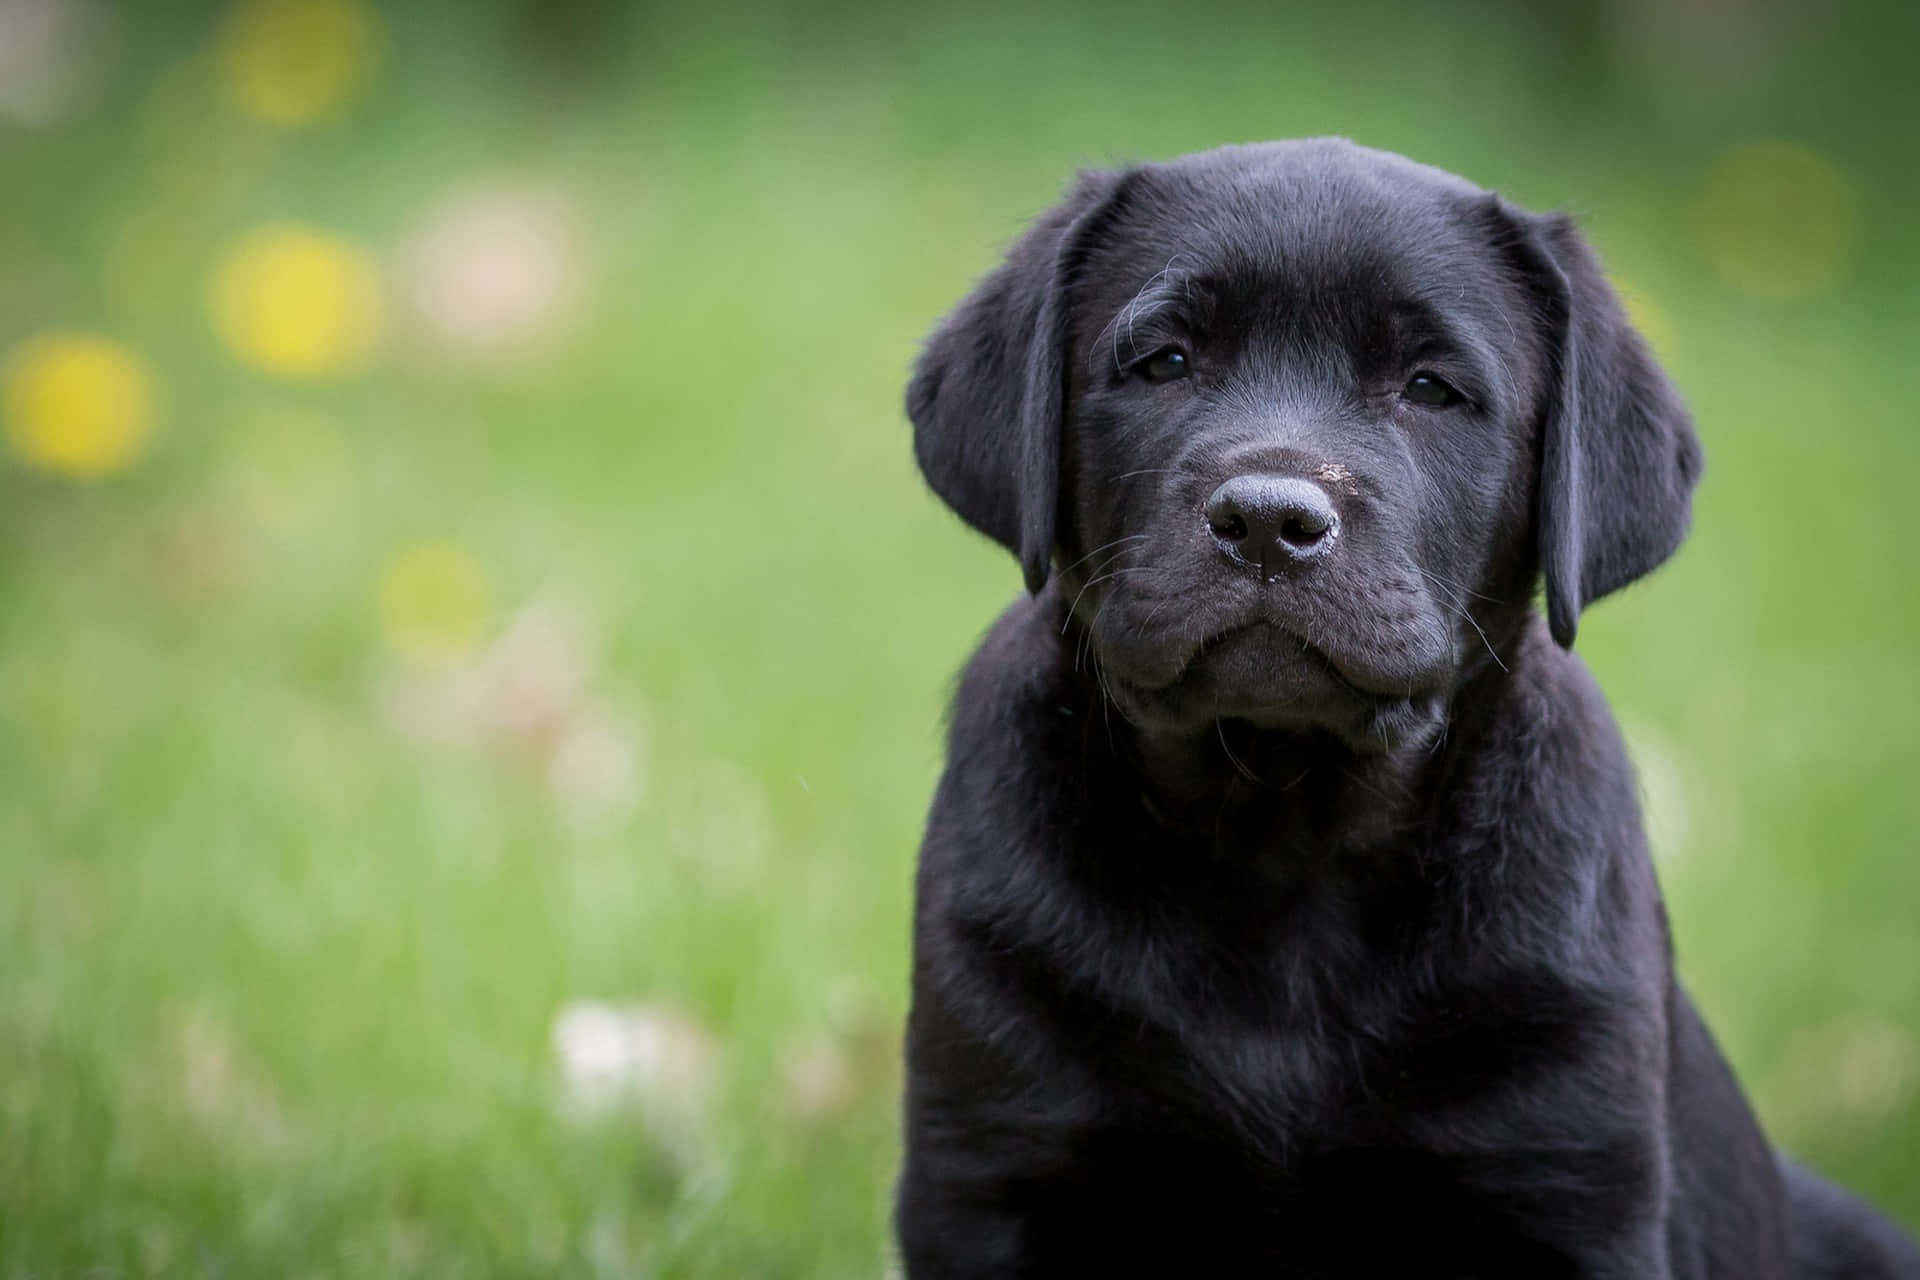 Imagende Un Cachorro De Labrador Negro Con Expresión Seria.